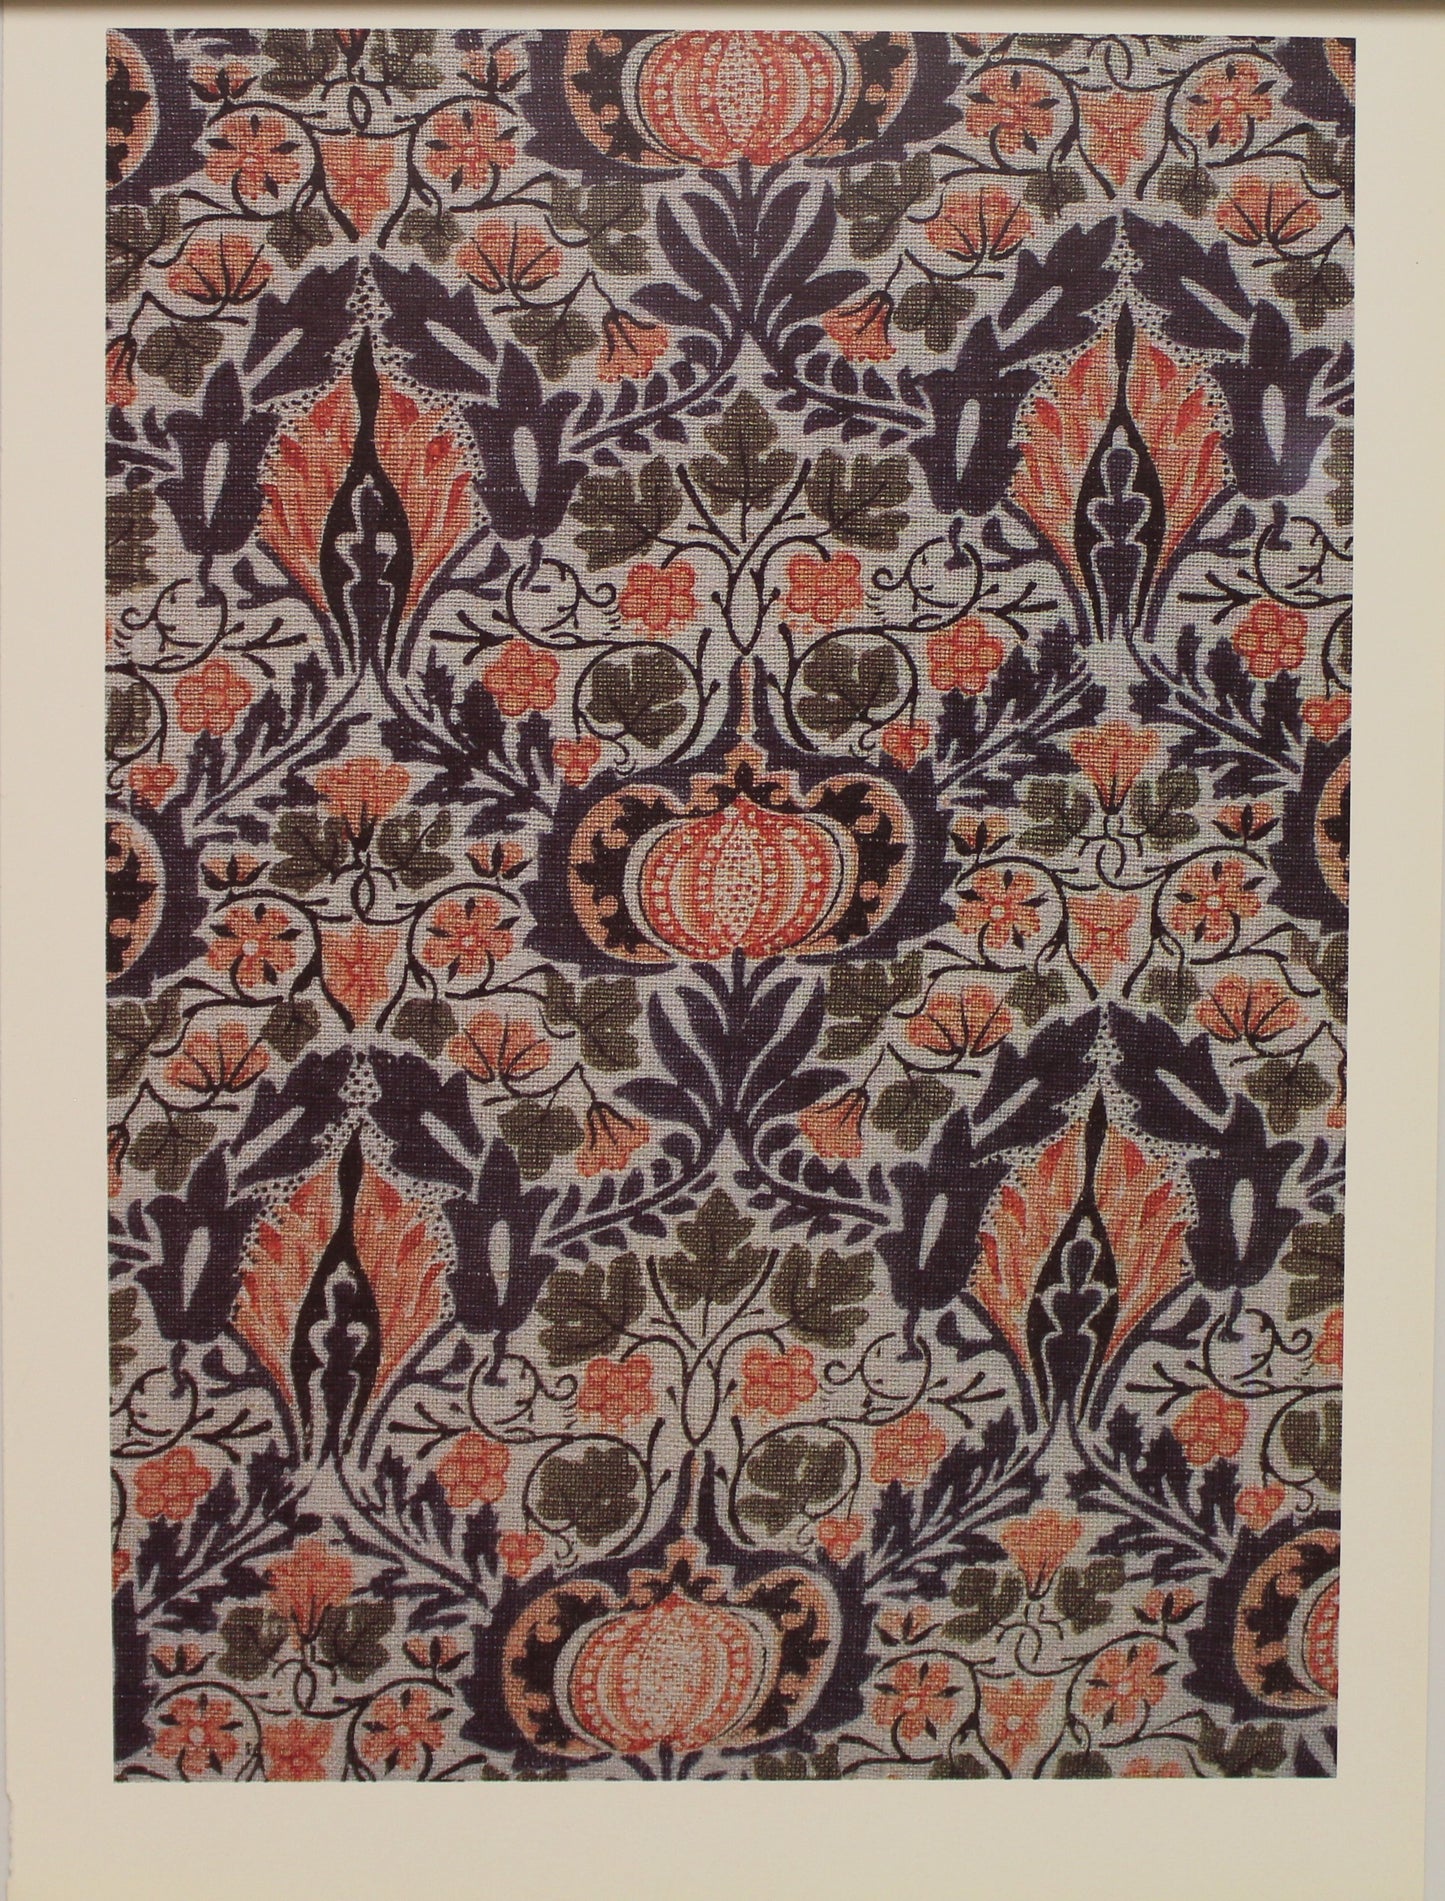 Decorator, Morris William, Wallpaper Design, Little Chintz, Plate 14, Art Nouveau, c1876